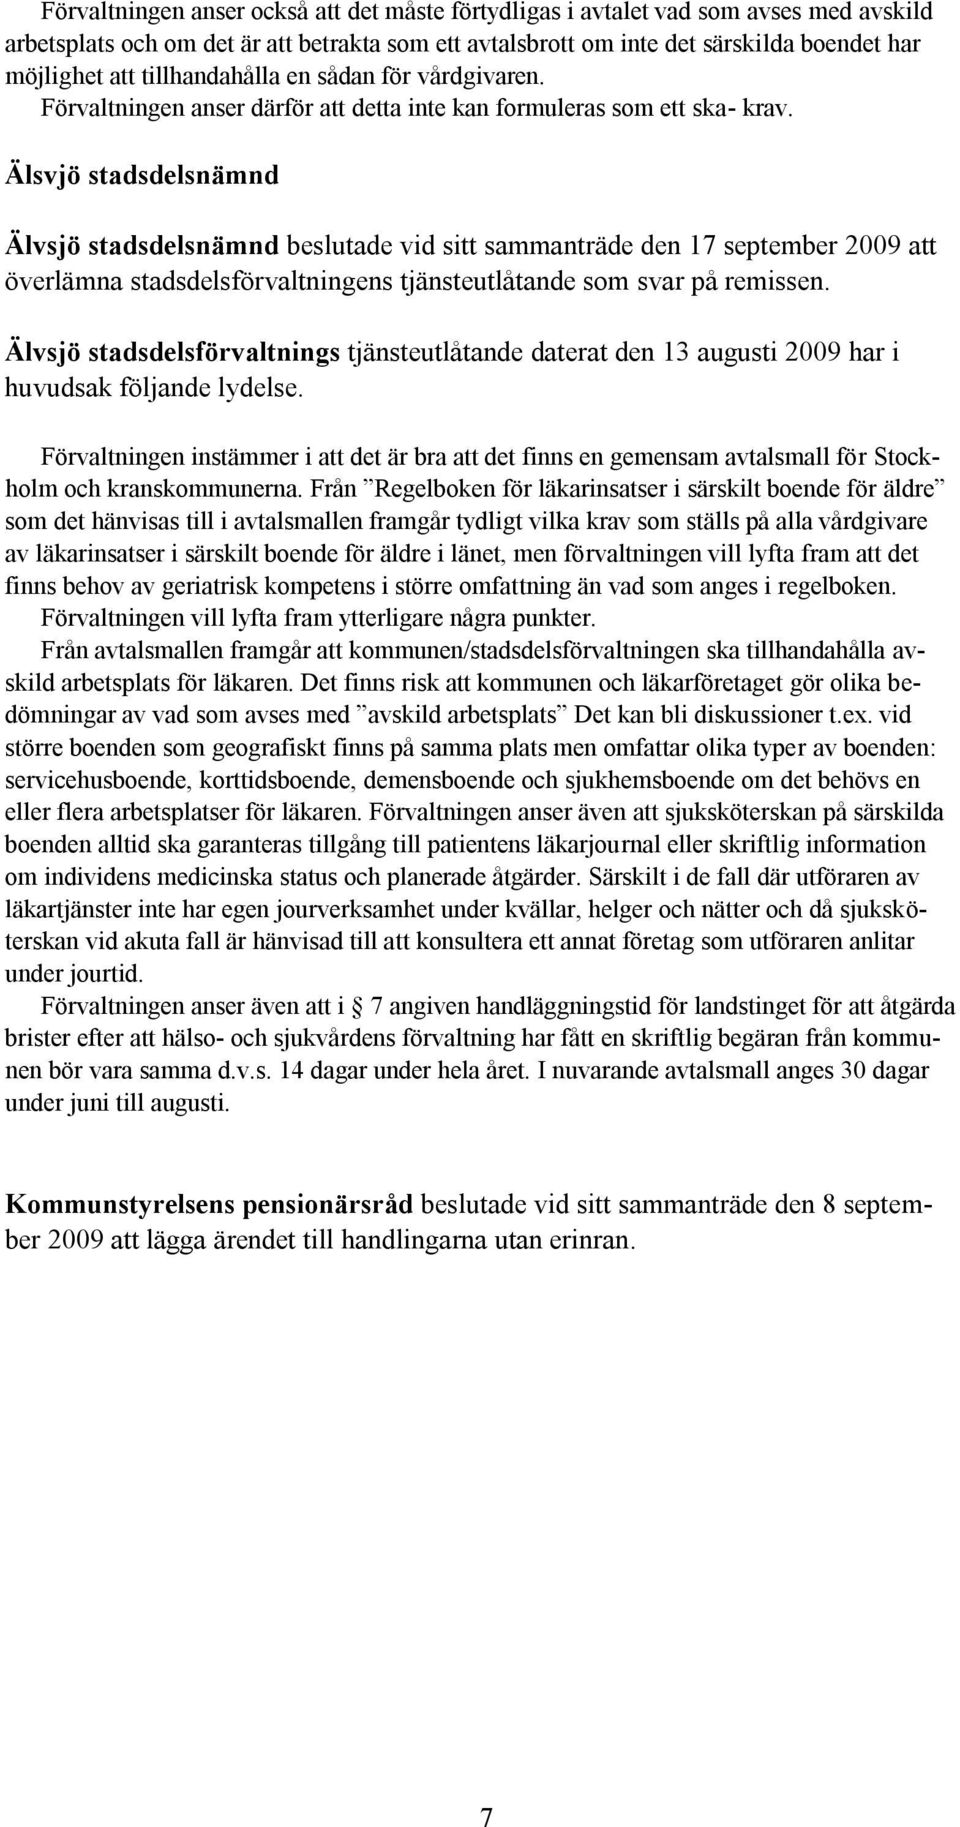 Älsvjö stadsdelsnämnd Älvsjö stadsdelsnämnd beslutade vid sitt sammanträde den 17 september 2009 att överlämna stadsdelsförvaltningens tjänsteutlåtande som svar på remissen.